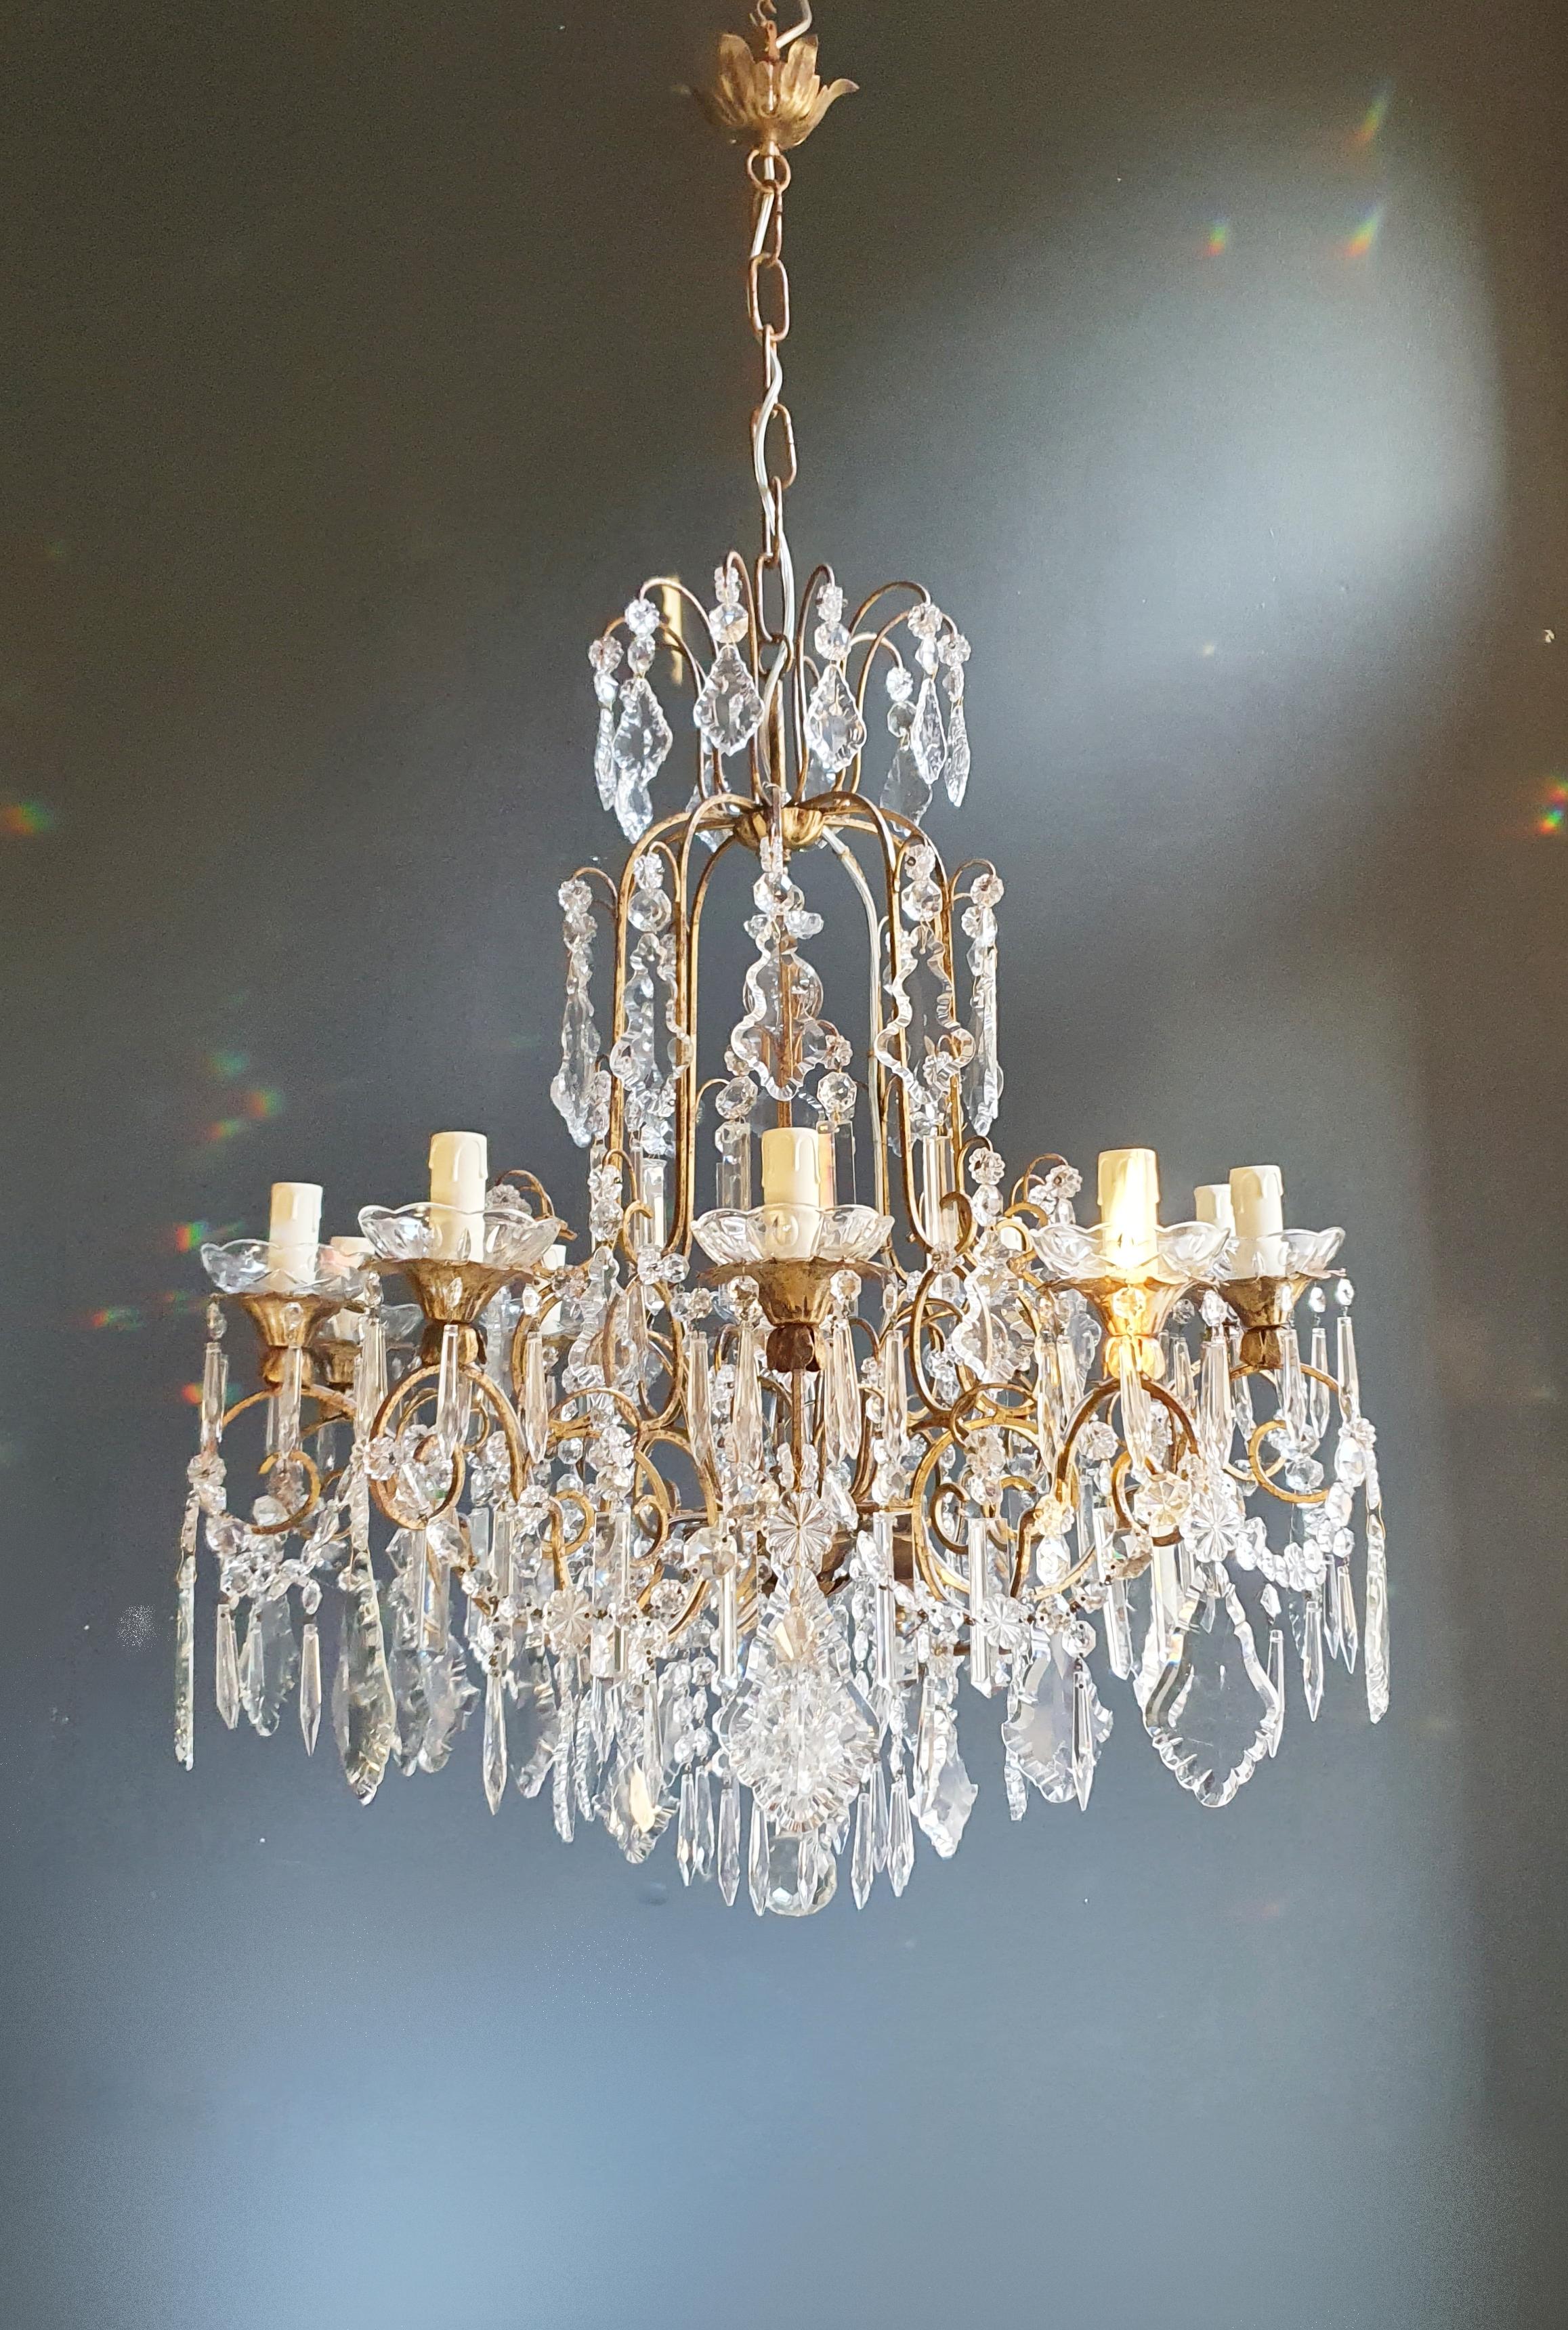 Brass Crystal Chandelier Antique Ceiling Lamp Lustre Art Nouveau Lamp For Sale 1